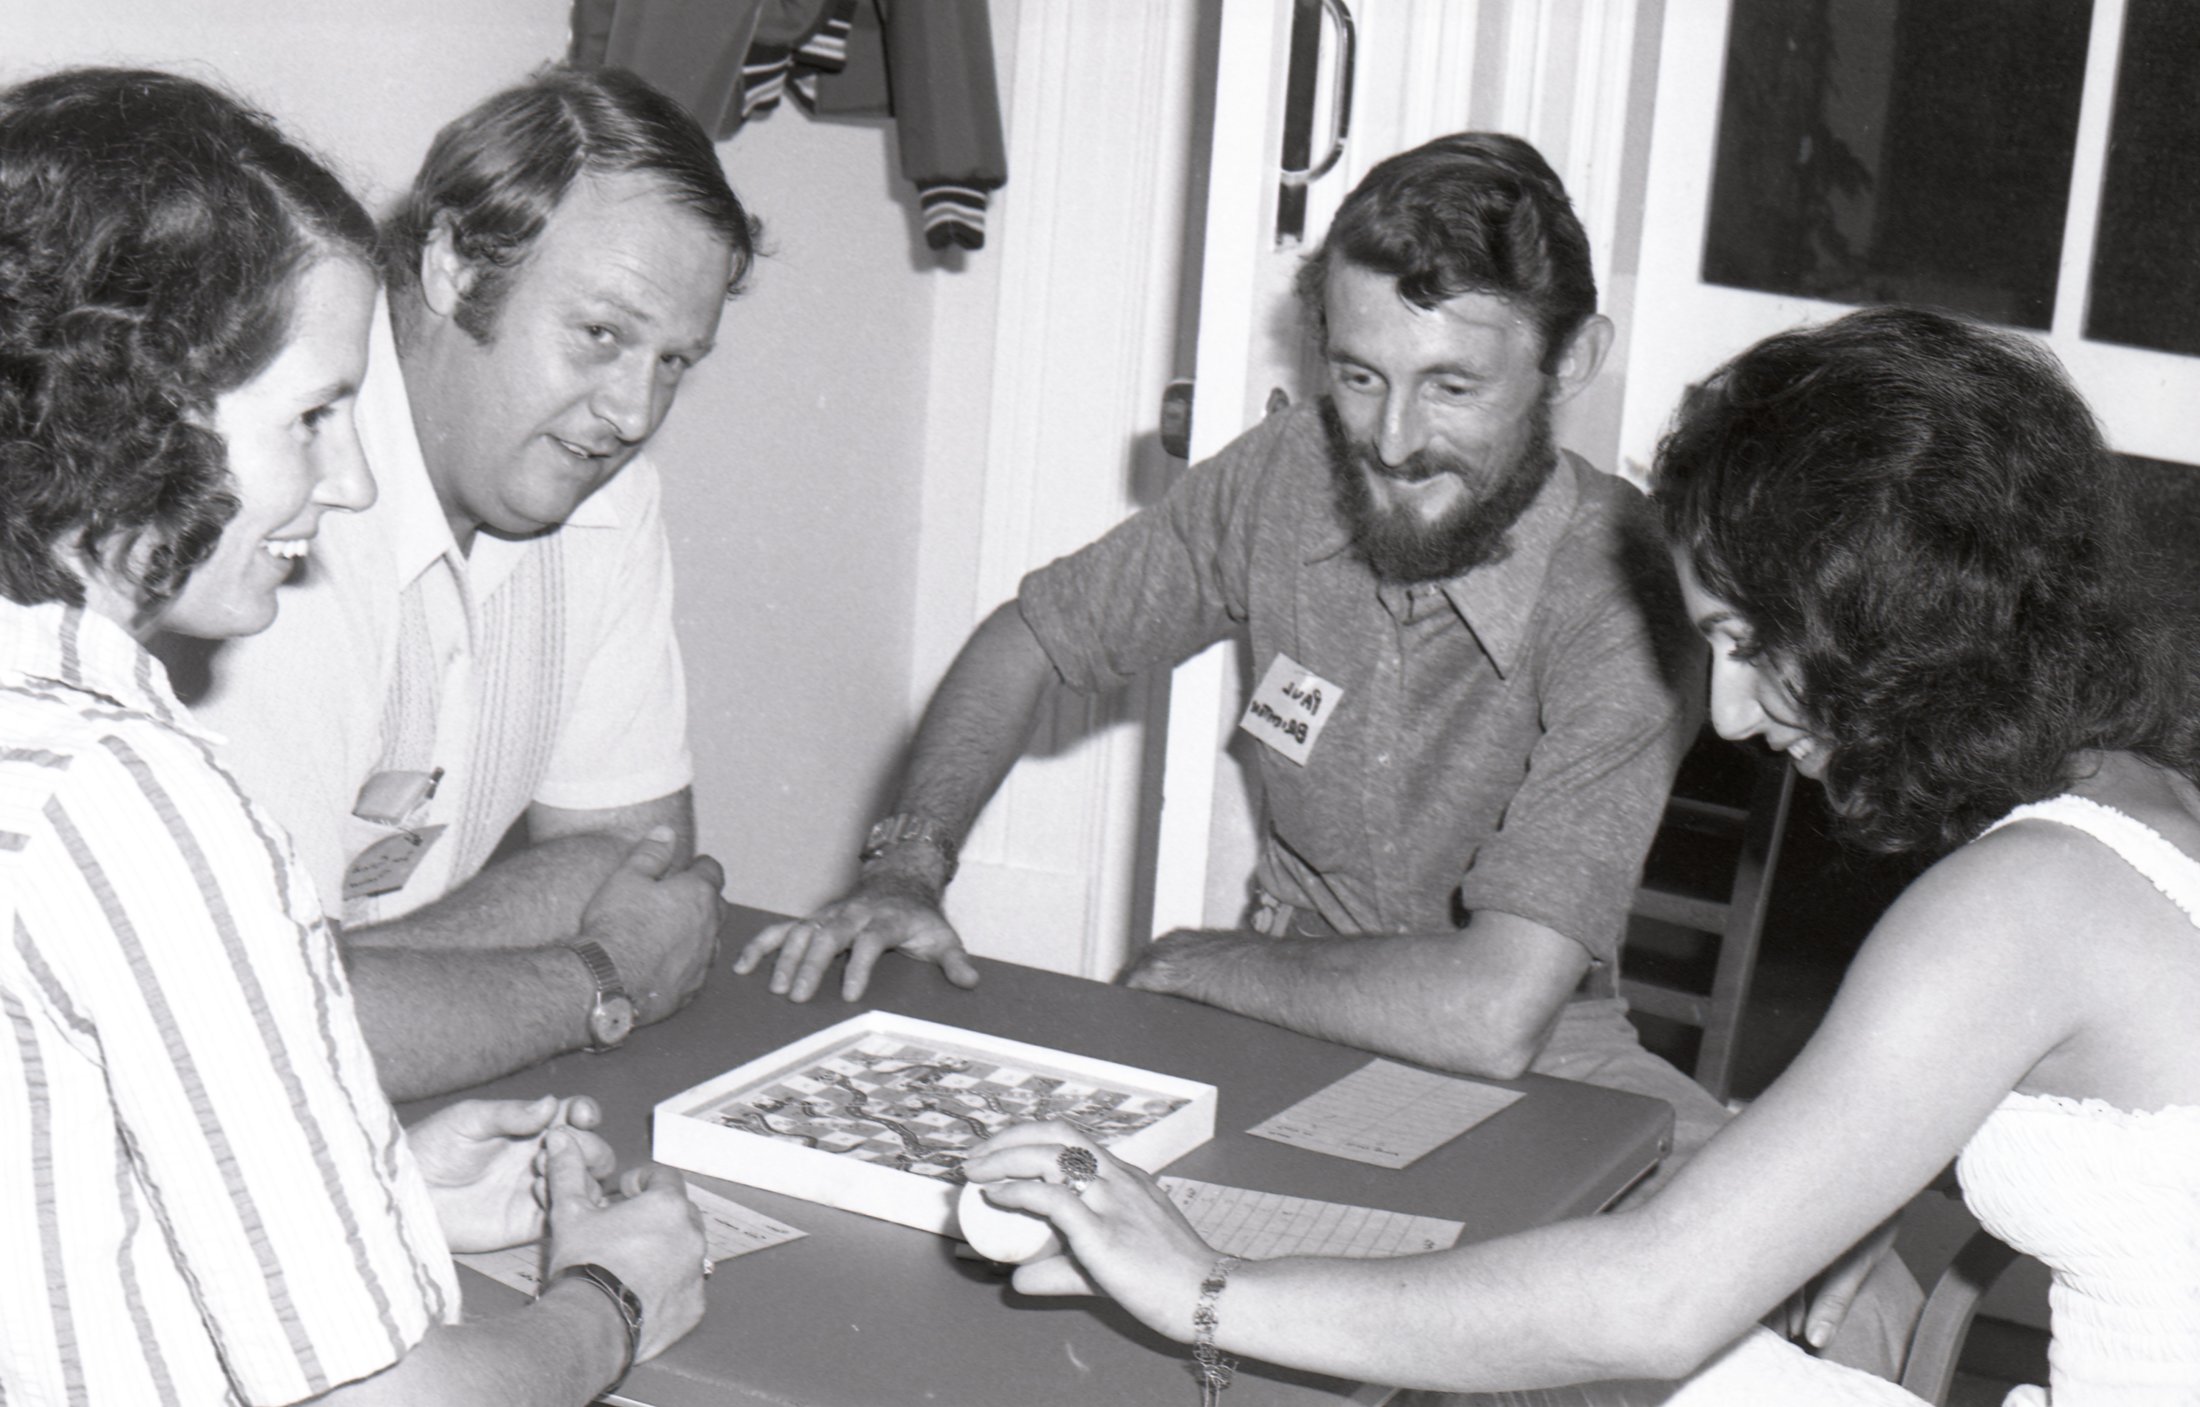 1975 - KC Fair - Board Games